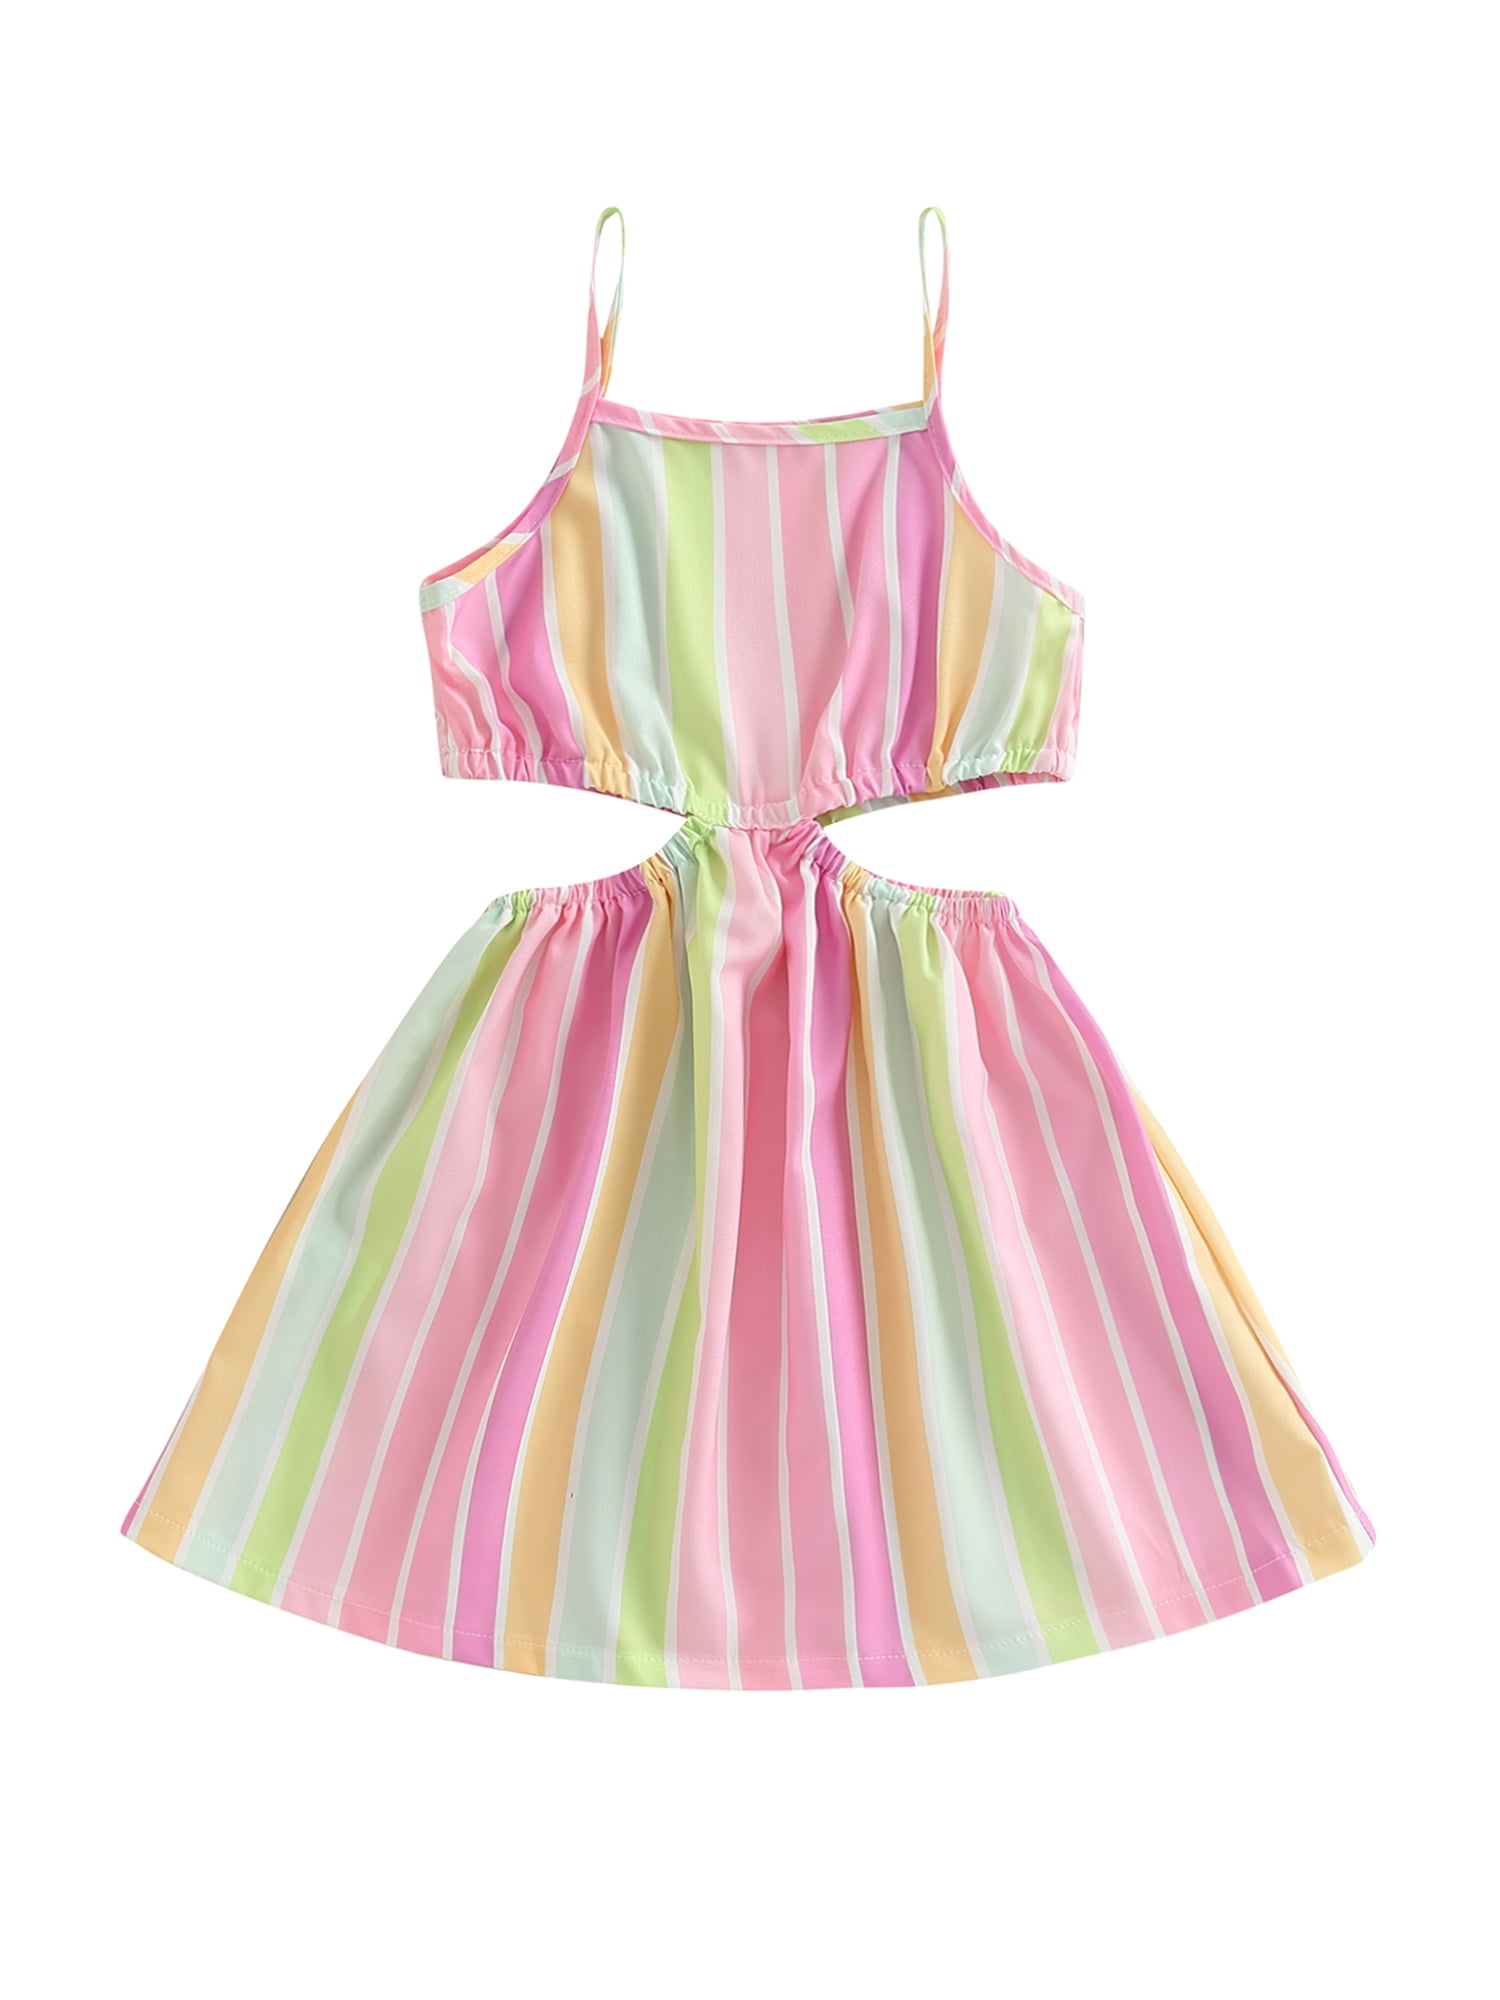 Bagilaanoe Little Girl Summer Dress Sleeveless Patchwork Stripe Pattern ...